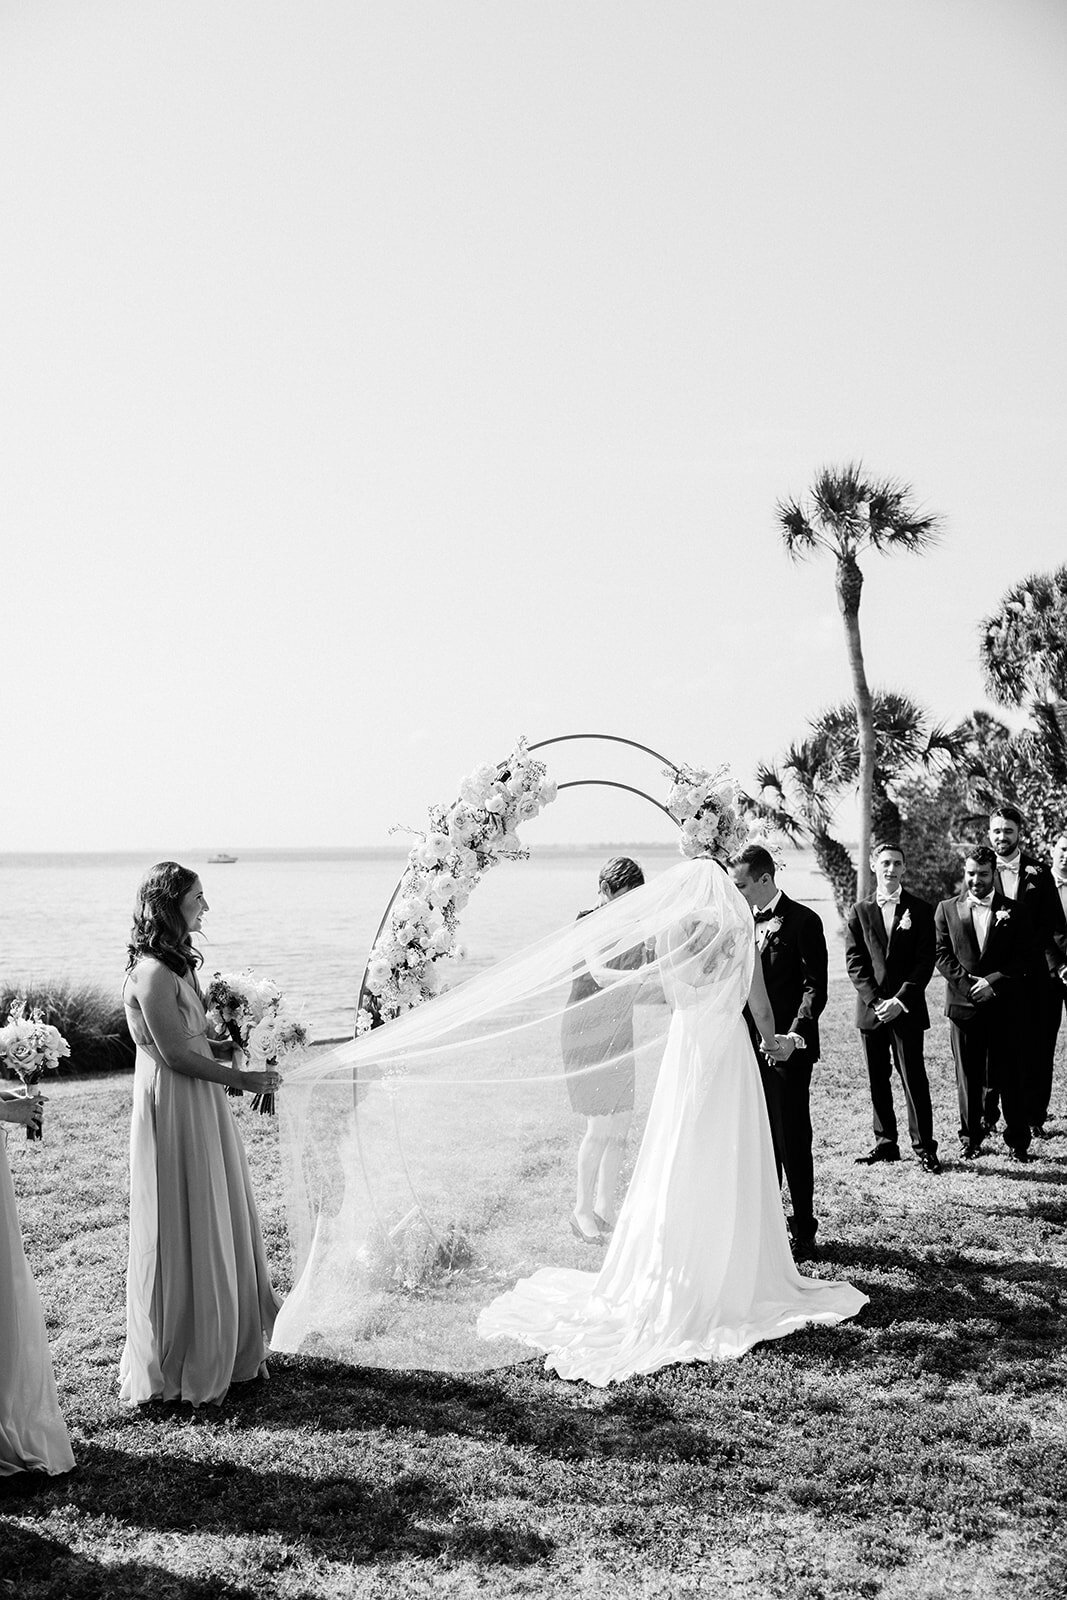 CORNELIA ZAISS PHOTOGRAPHY COURTNEY + ANDREW WEDDING 0827_websize